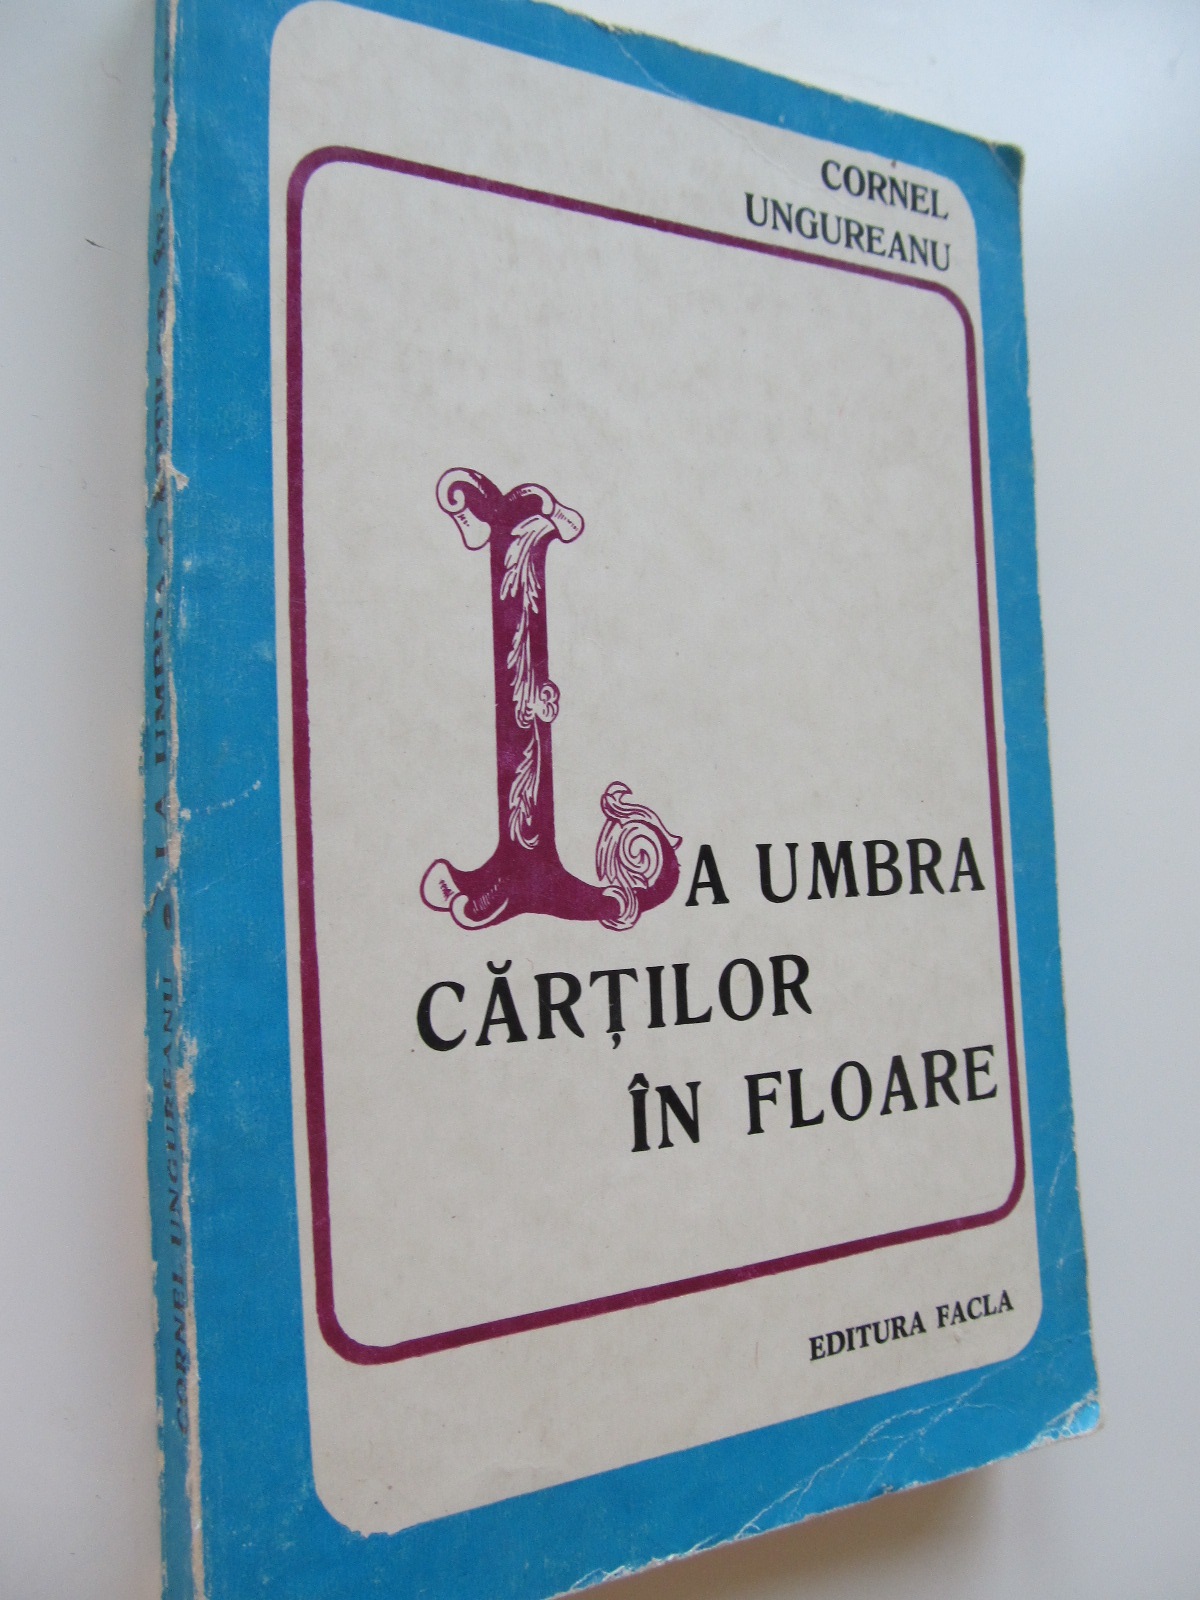 La umbra cartilor in floare - Cornel Ungureanu | Detalii carte